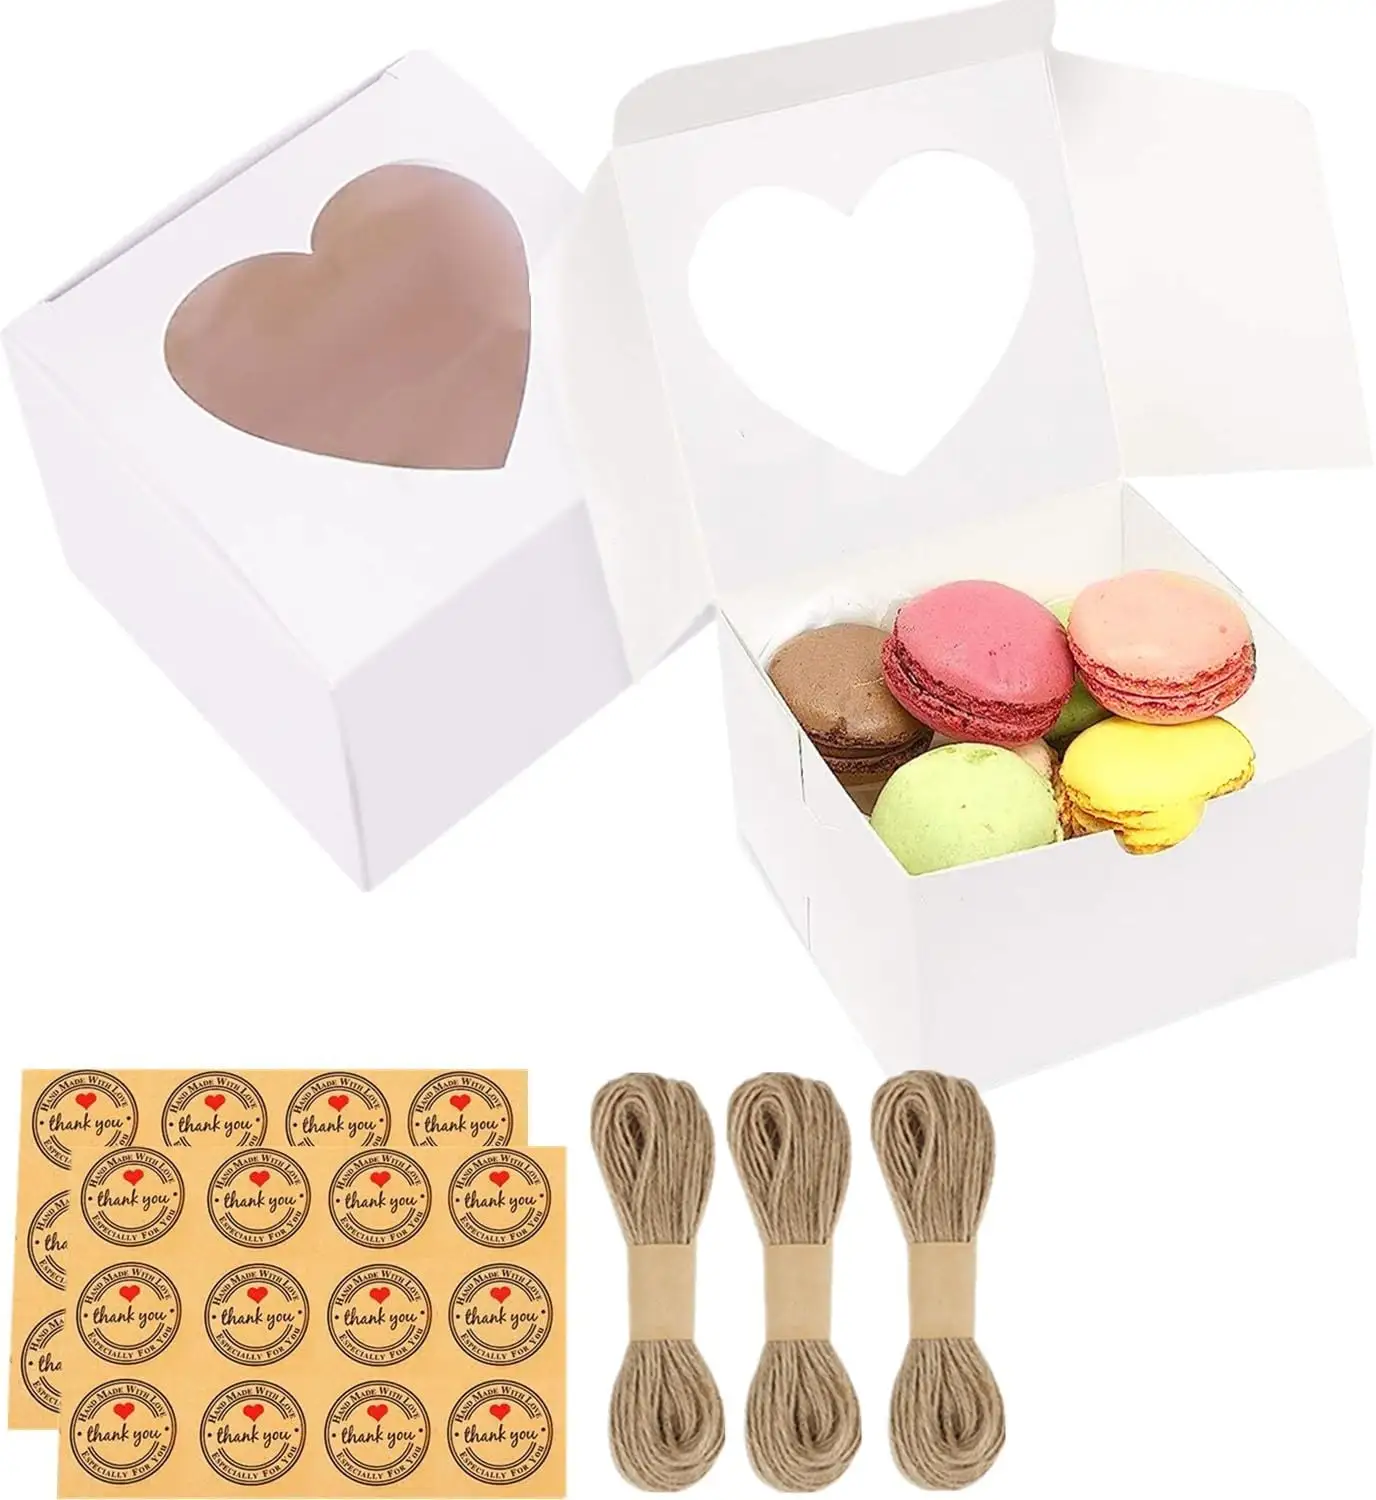 ब्रेड, खिड़की के साथ केक बॉक्स, कुकी बॉक्स छोटा स्नैक बॉक्स चॉकलेट स्ट्रॉबेरी, मैकरॉन, कपकेक, कैंडी, डोनट्स के लिए पेस्ट्री बॉक्स